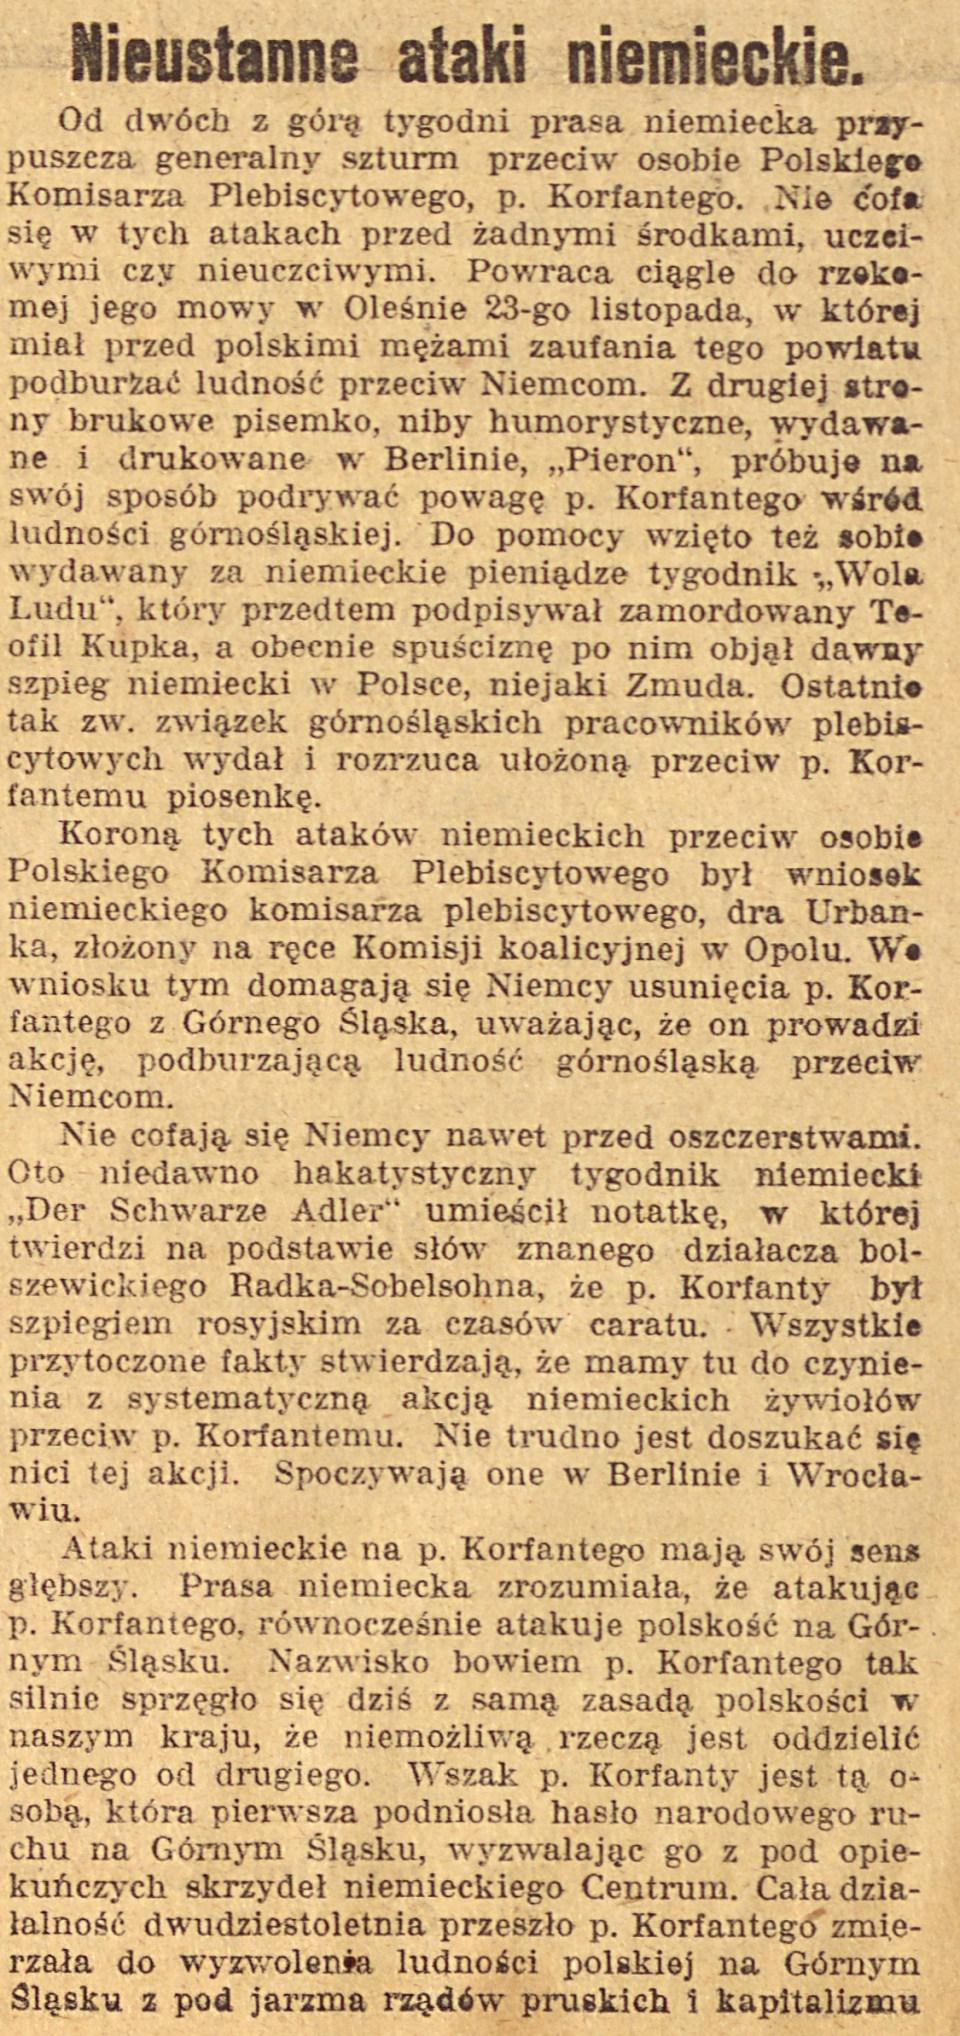 Bytom, Olesno, Opole, Gazeta Opolska cz.1 (17.12.1920)